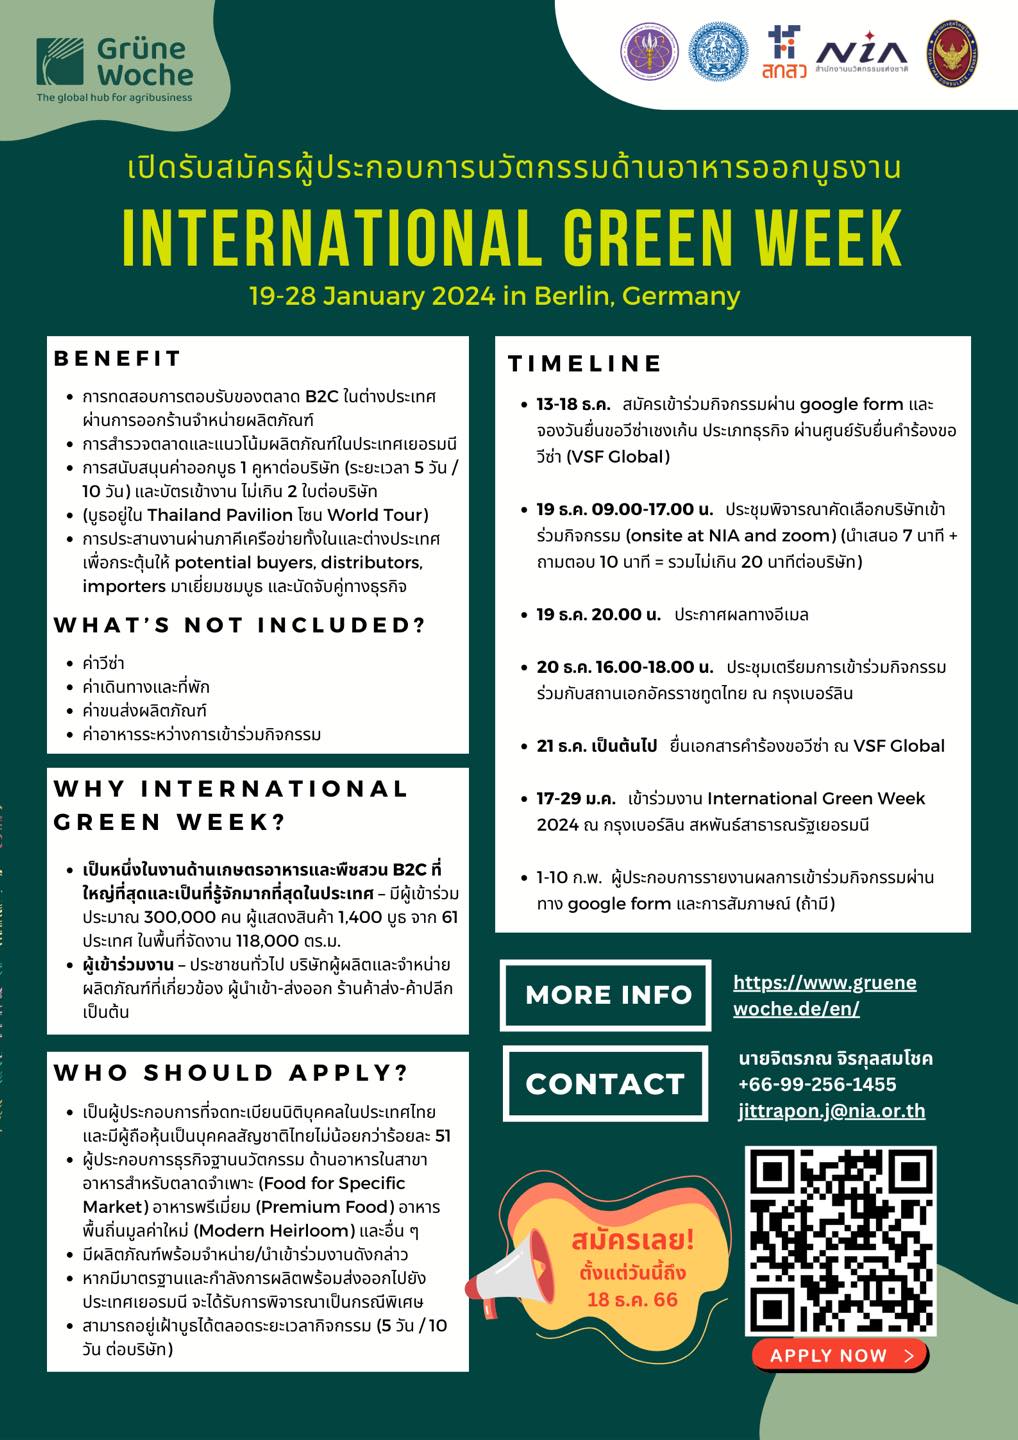 ร่วมออกบูธในงาน International Green Week 2024 ณ กรุงเบอร์ลิน สหพันธ์สาธารณรัฐเยอรมนี